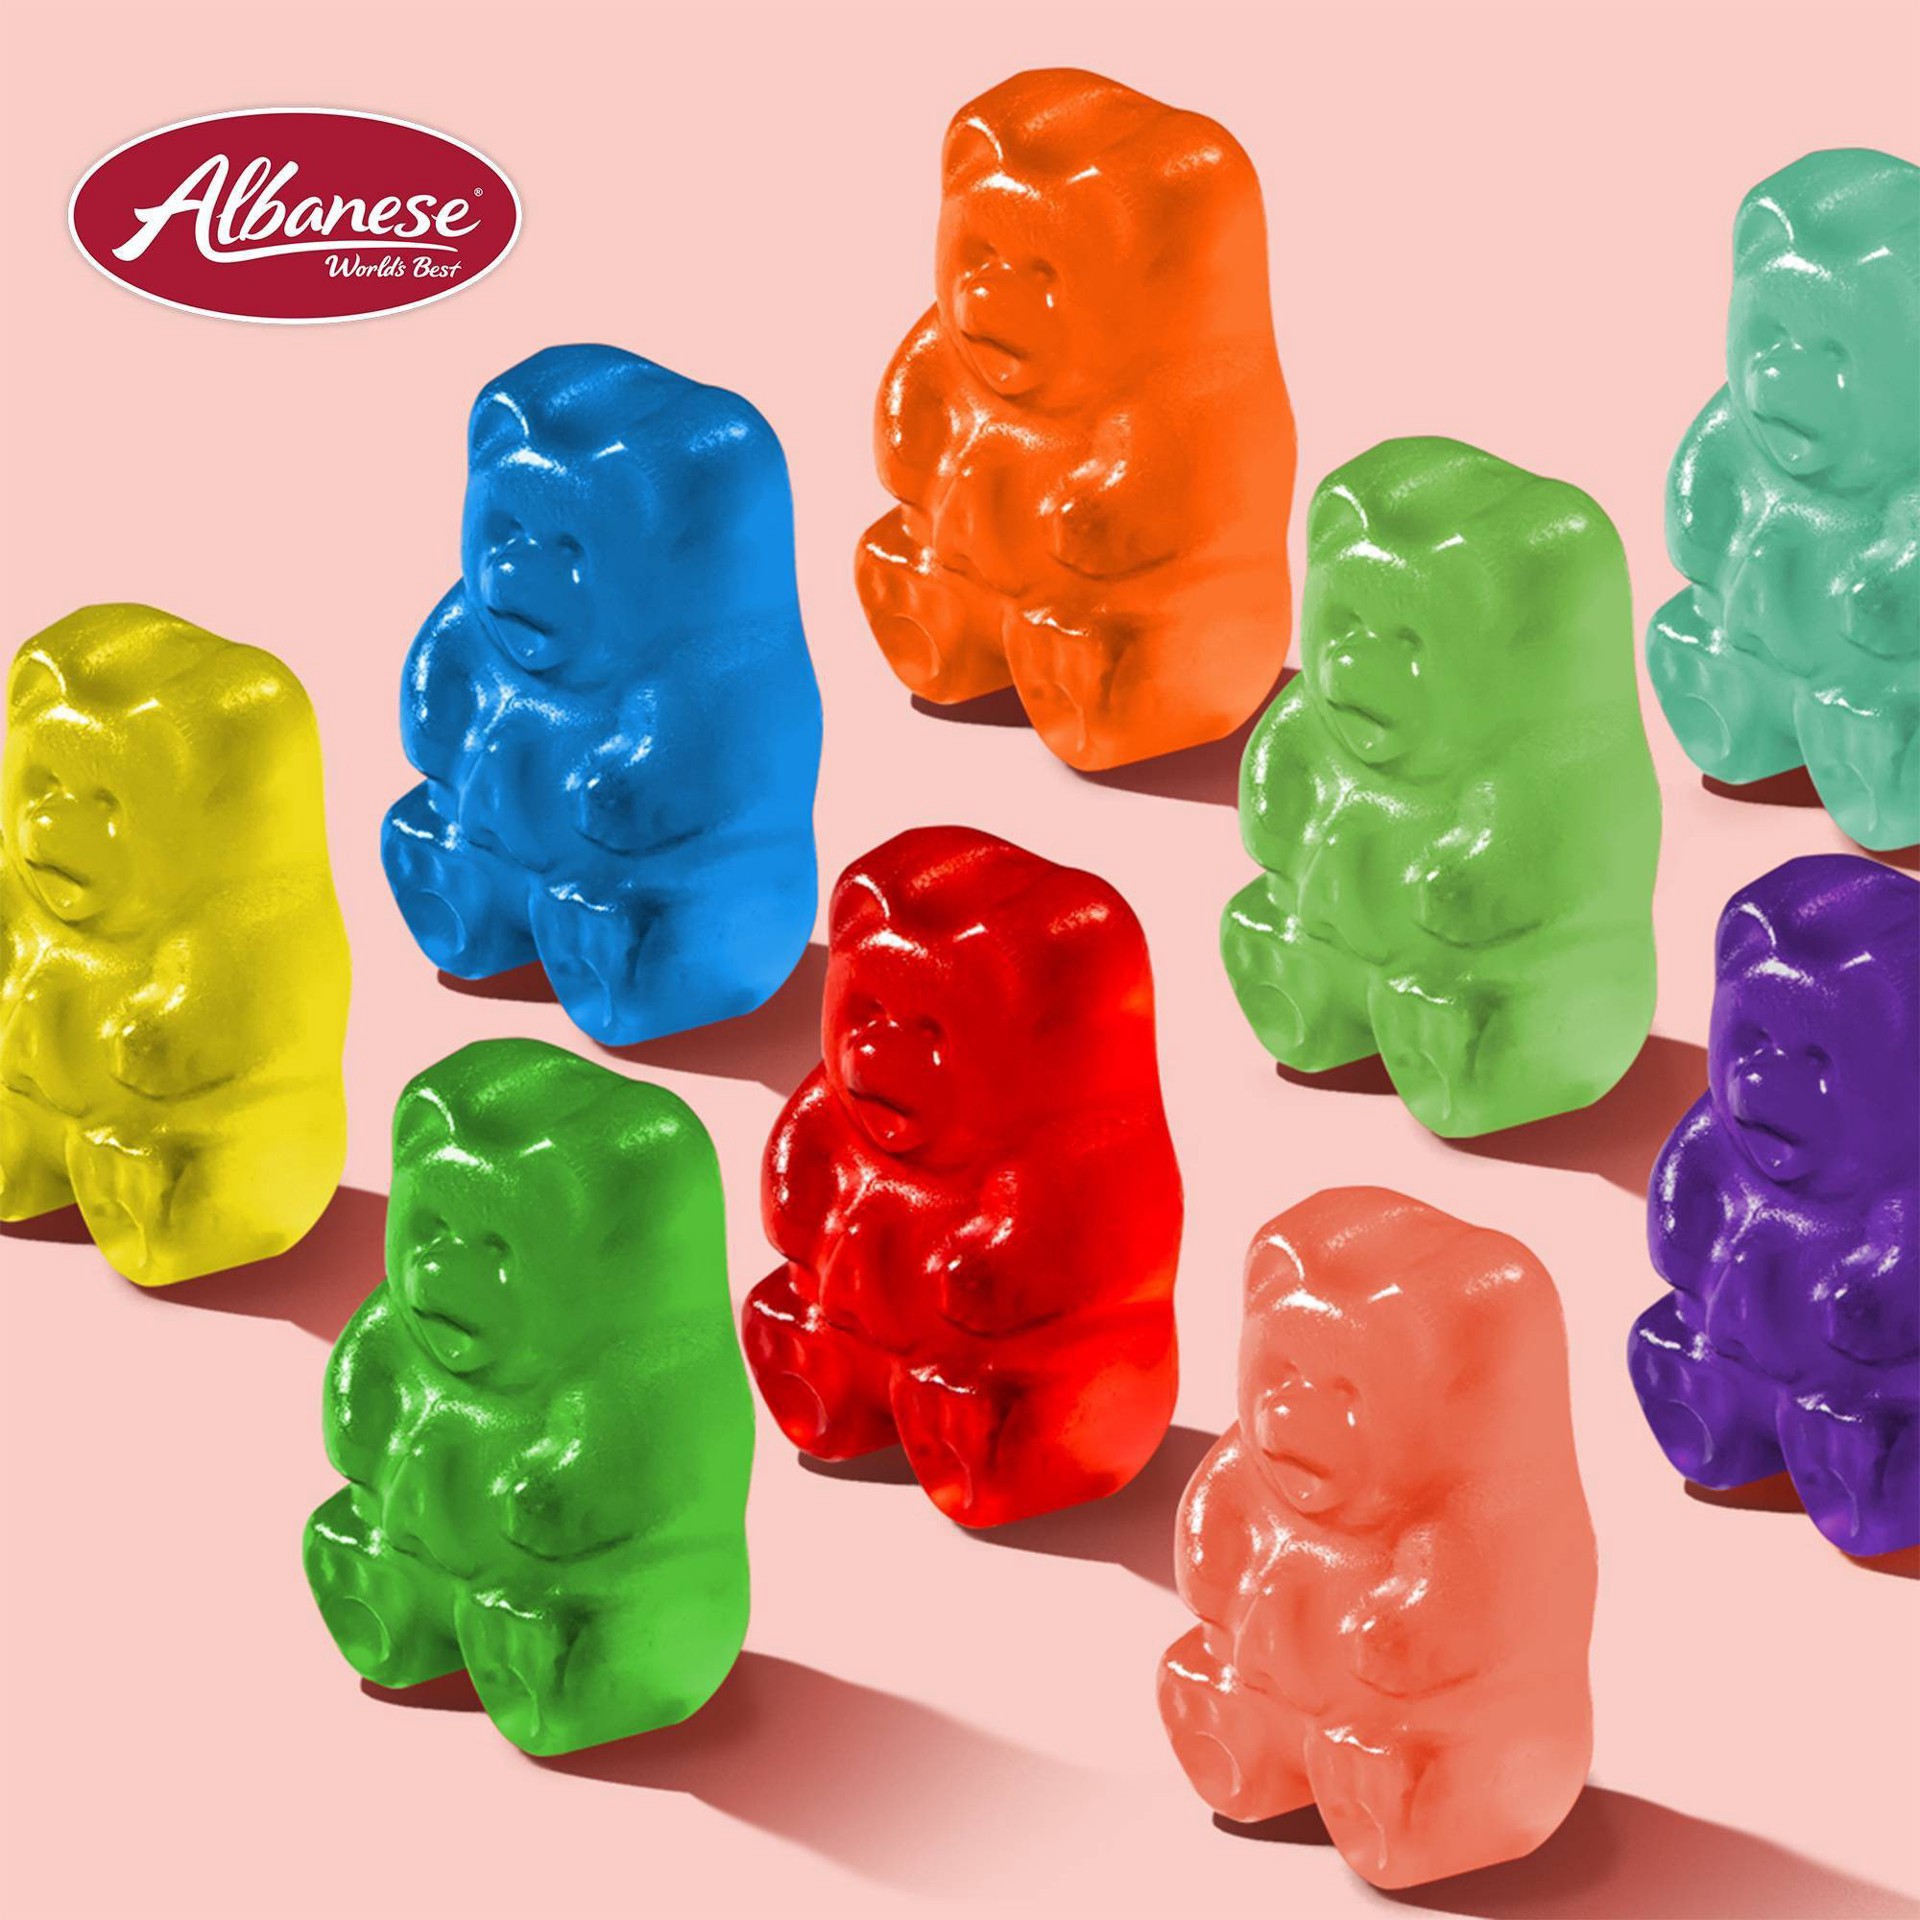 slide 7 of 17, Albanese World's Best 12 Flavor Gummi Bears, 9 oz